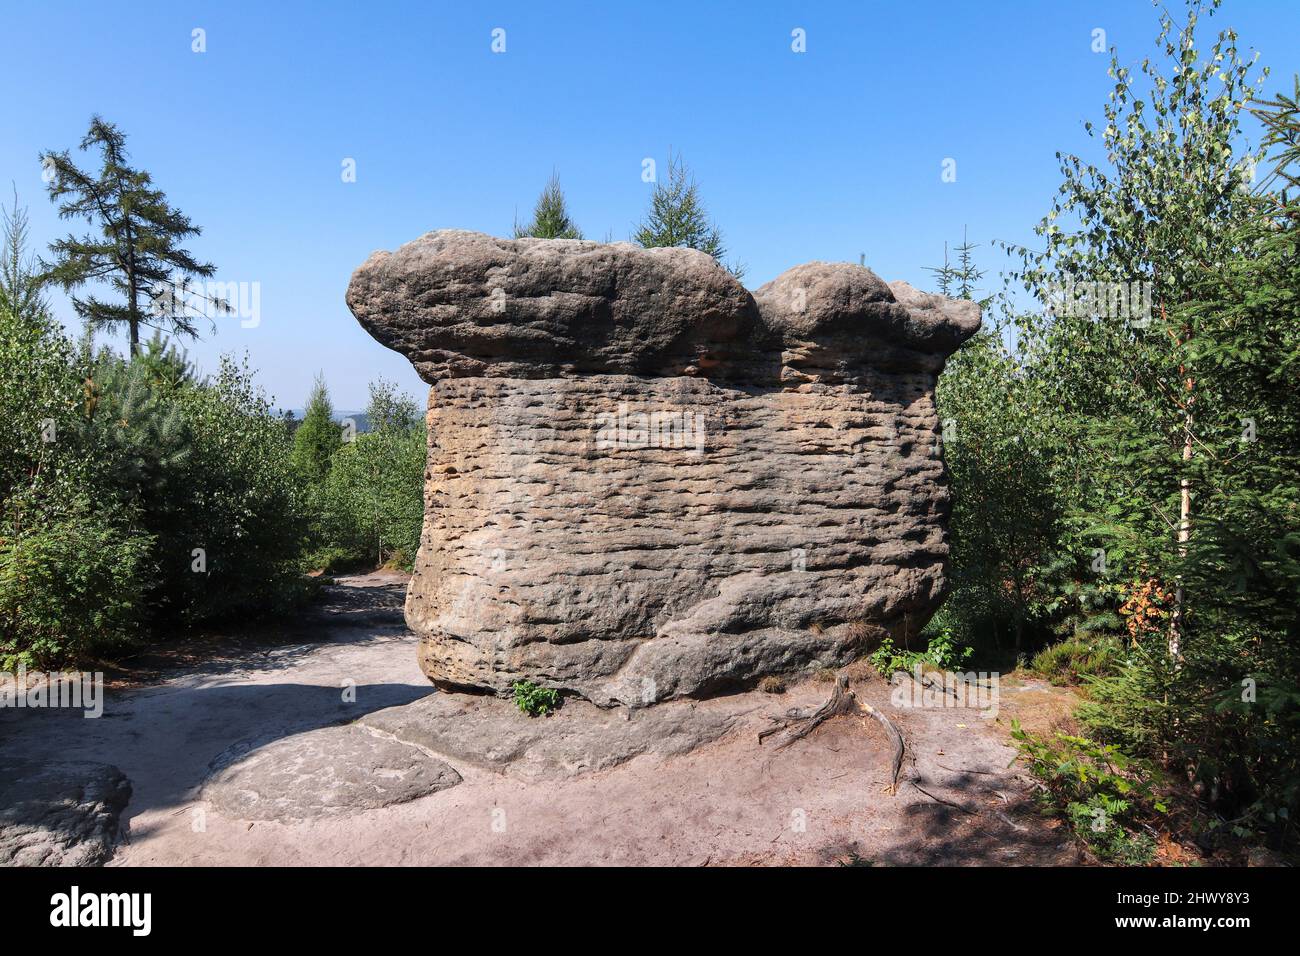 Steinpilze - Felsformation in den Broumov Wänden (Broumovske steny), Gebirge und Naturschutzgebiet, Teil des Tafelgebirges in der Tschechischen Republik Stockfoto